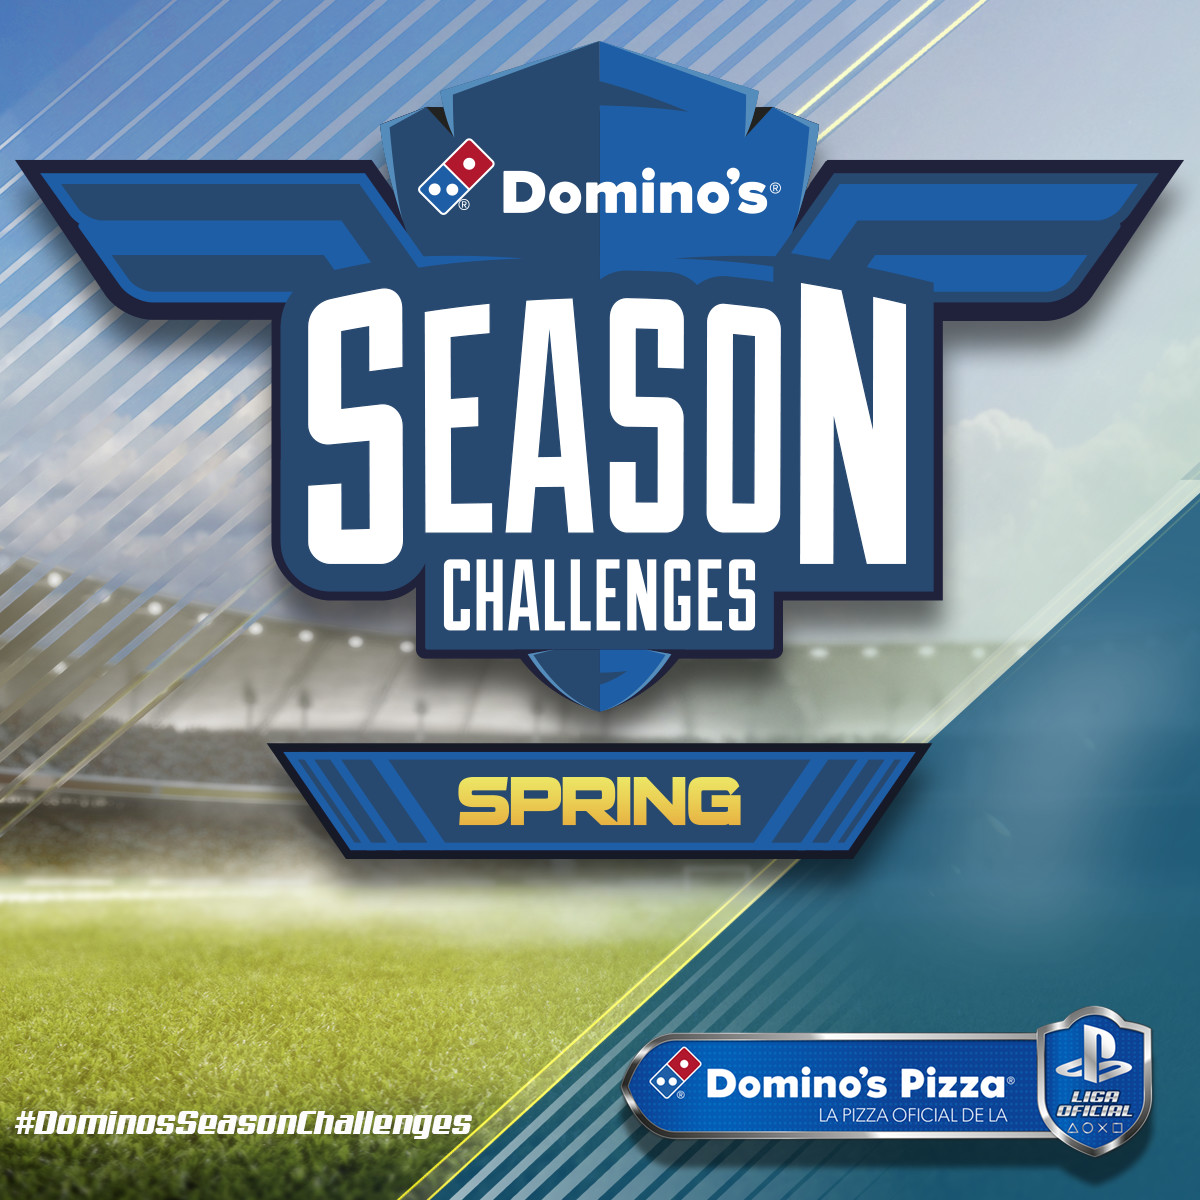 La Liga Oficial PlayStation presenta los Domino’s Season Challenges